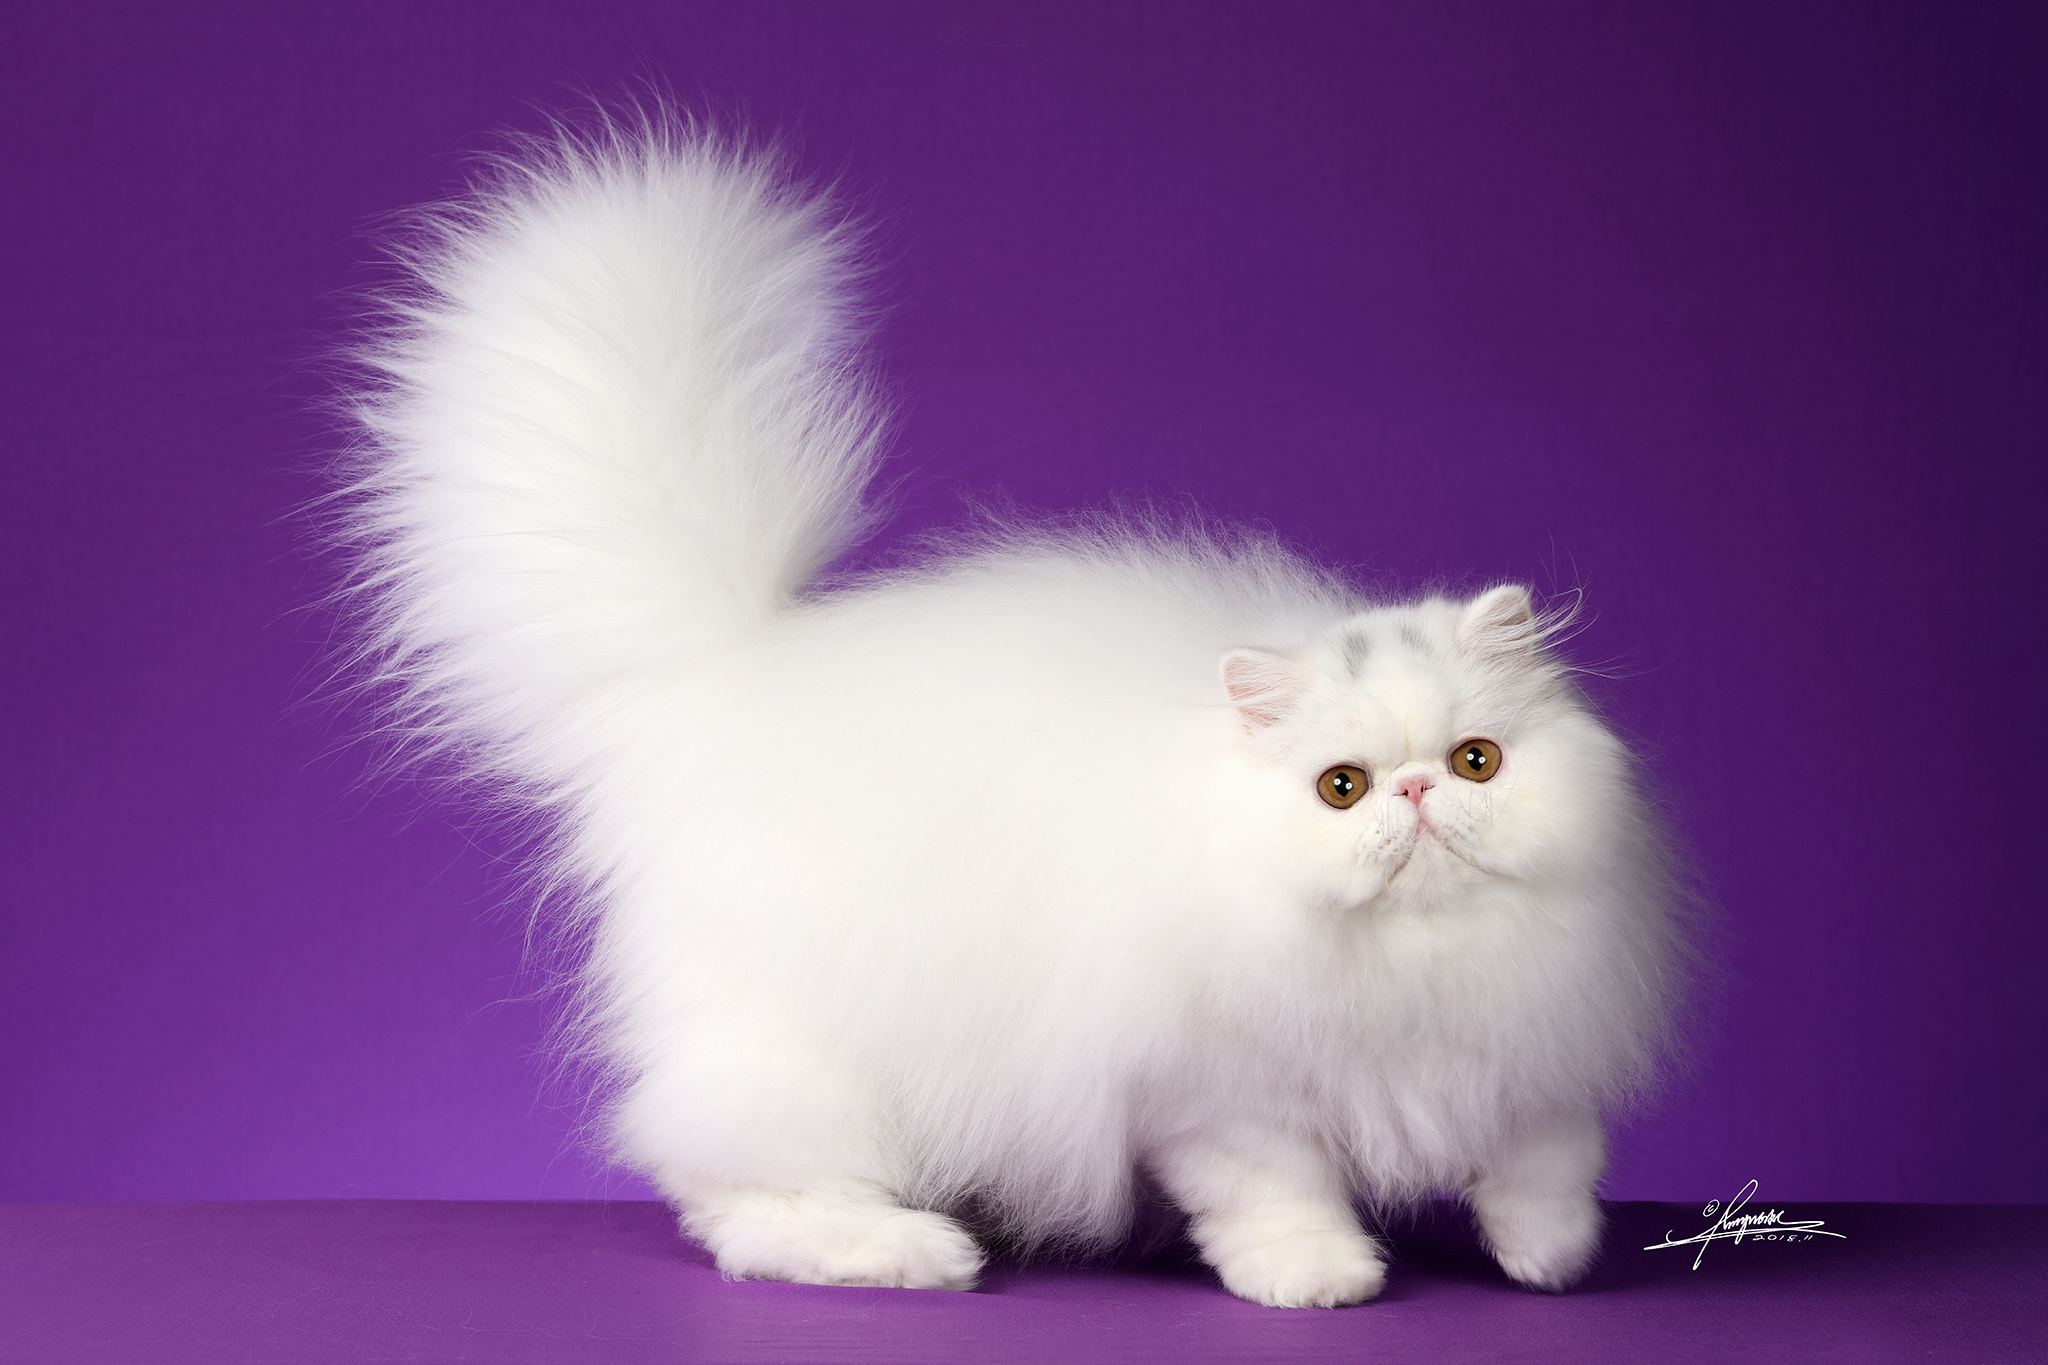 猫的品种名称大全 猫咪品种1秒认全 - 生活百科 - 网创网